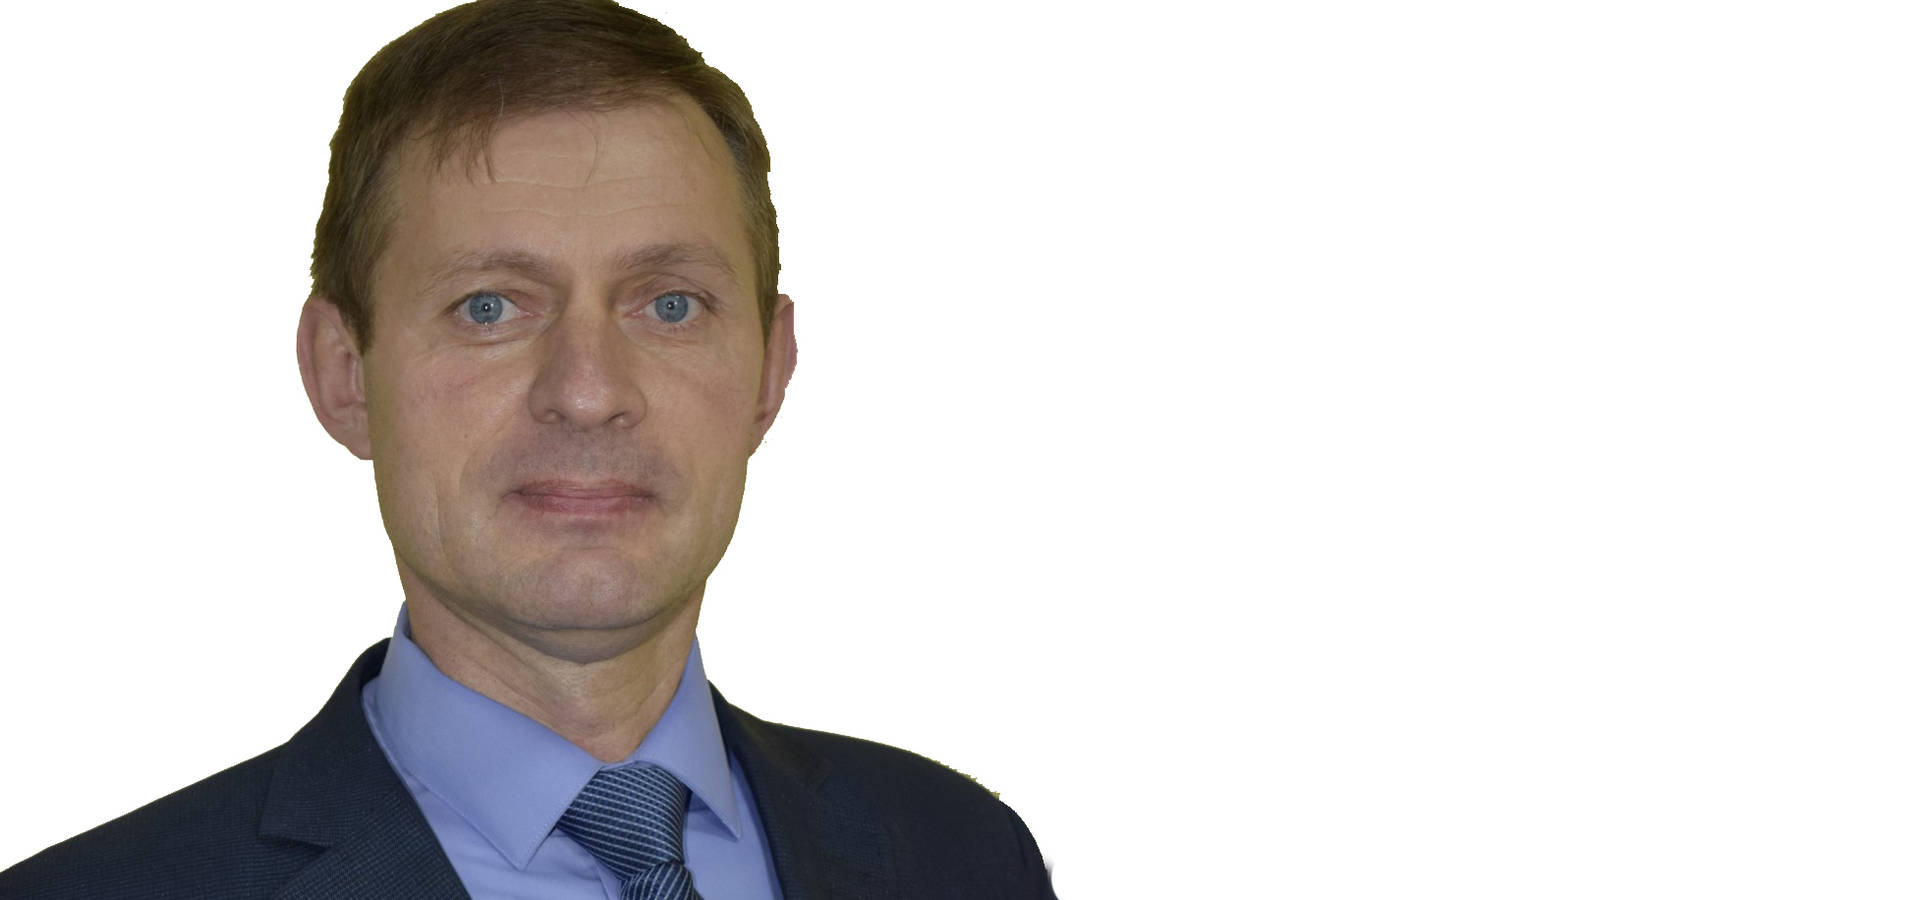 Рішення суду про перевибори в Уланівській ОТГ ще не вступило в дію і може бути оскаржено, - Сергій Голубенко